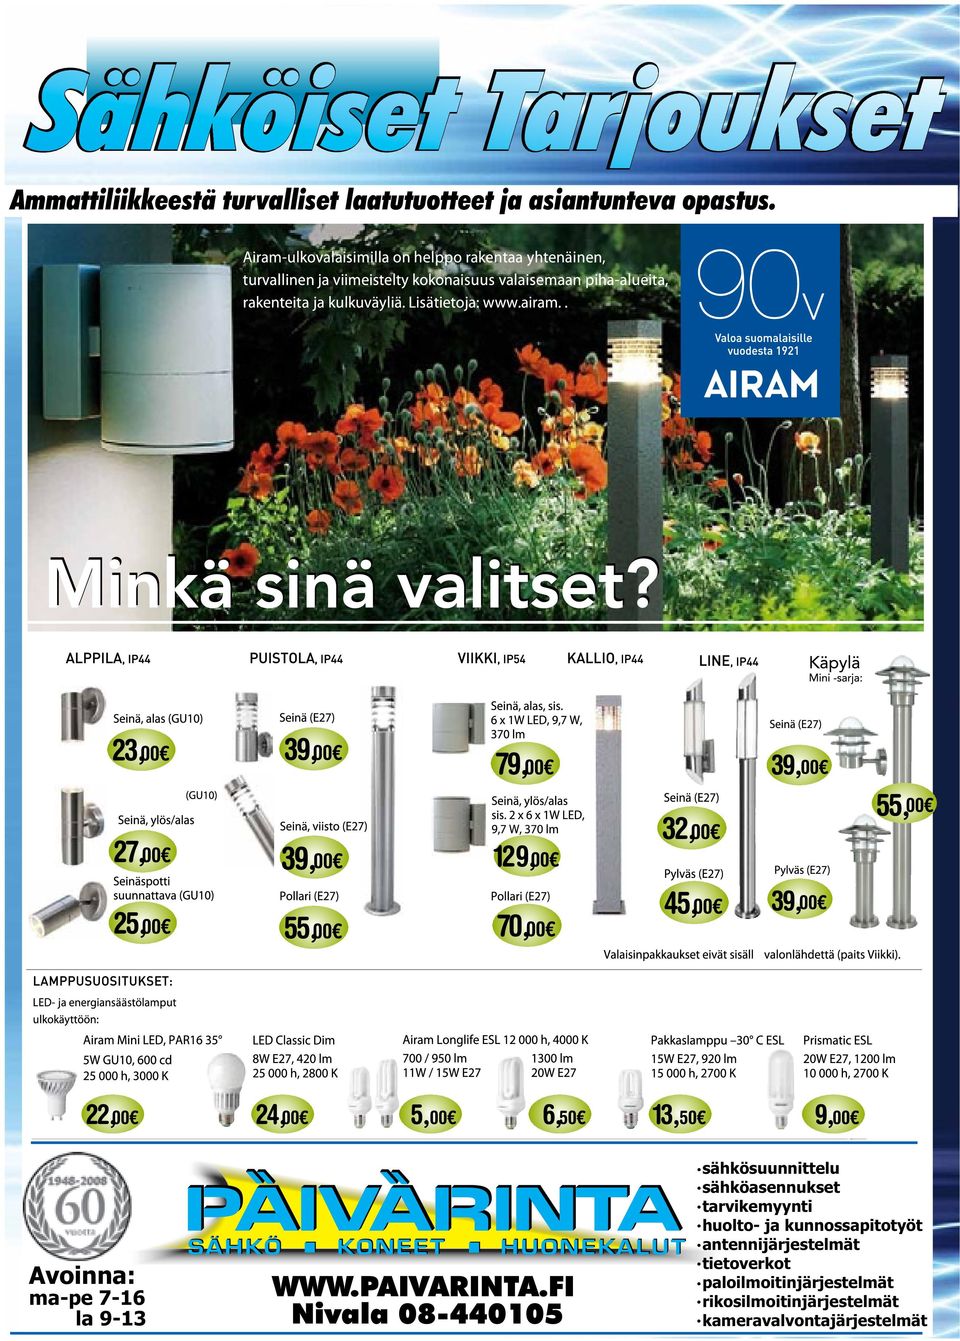 FI Nivala 08-440105 sähkösuunnittelu sähköasennukset tarvikemyynti huolto- ja